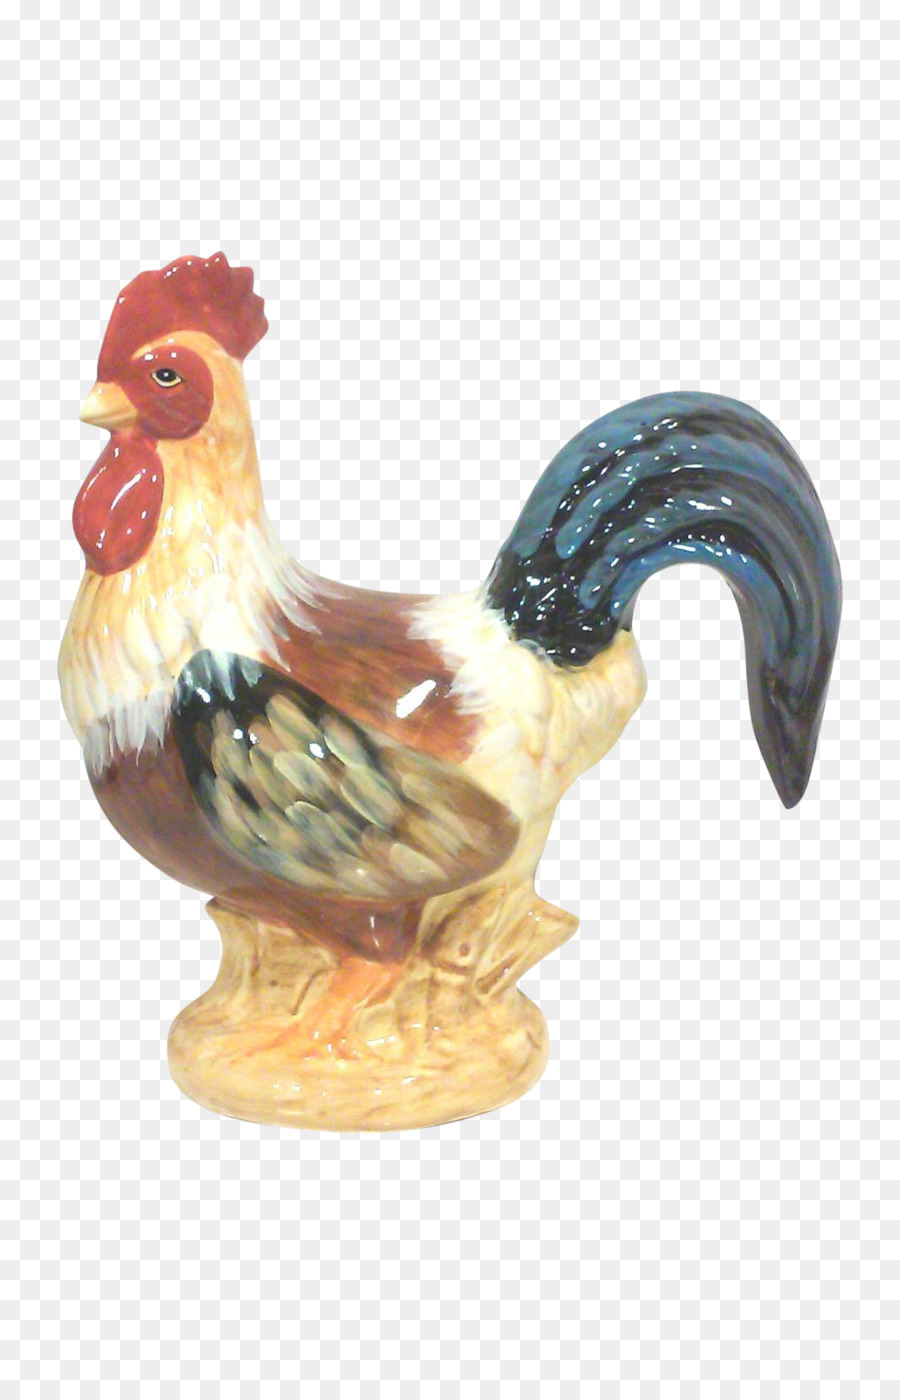 Gallo In Ceramica Di Pollo Etsy Figurine - Dipinto a mano di pollo